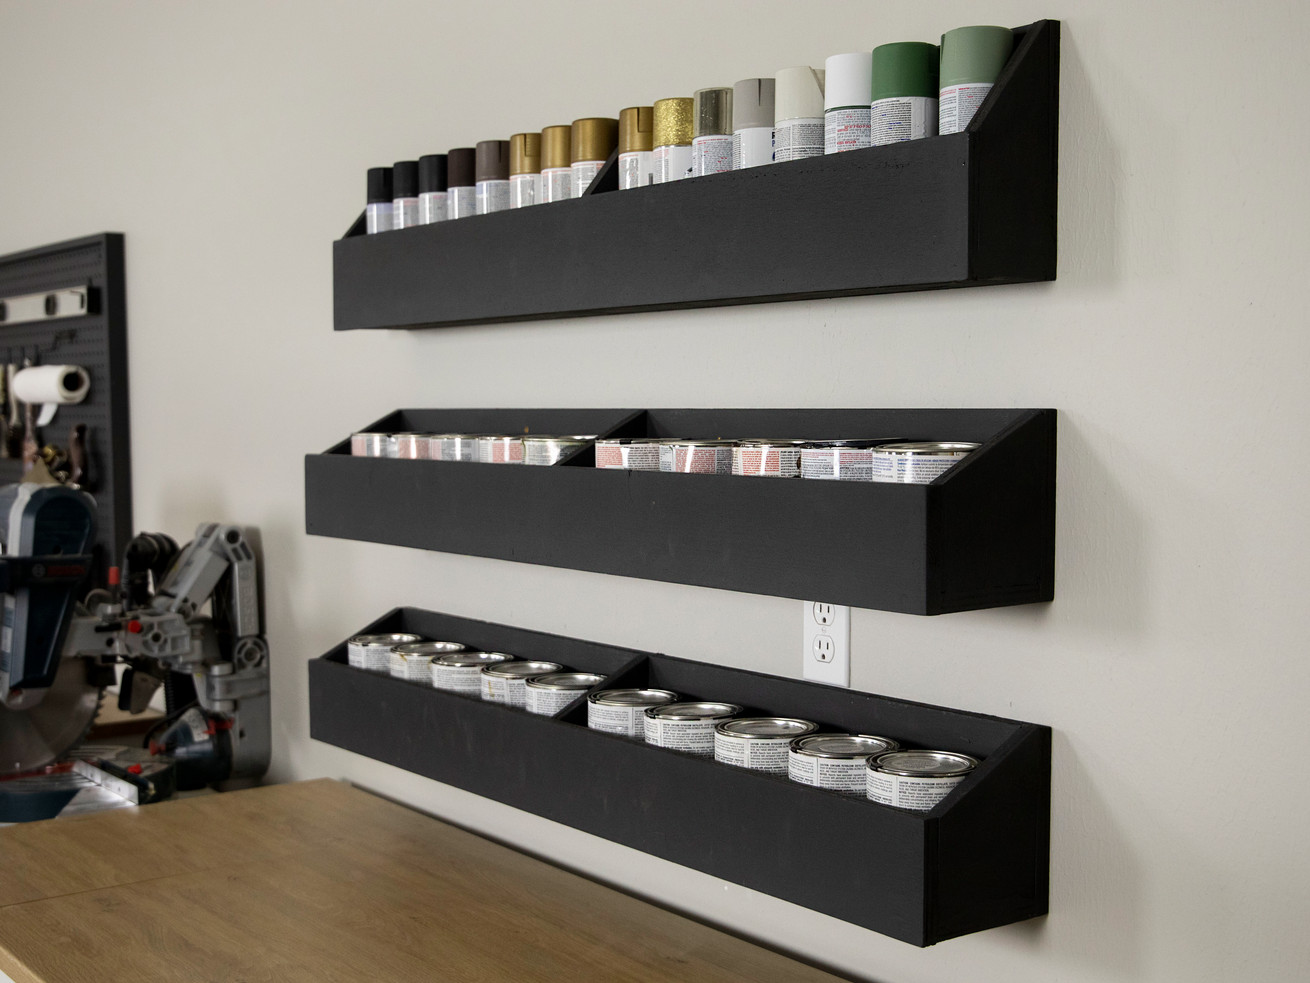 DIY Trough Shelves to Store Paint